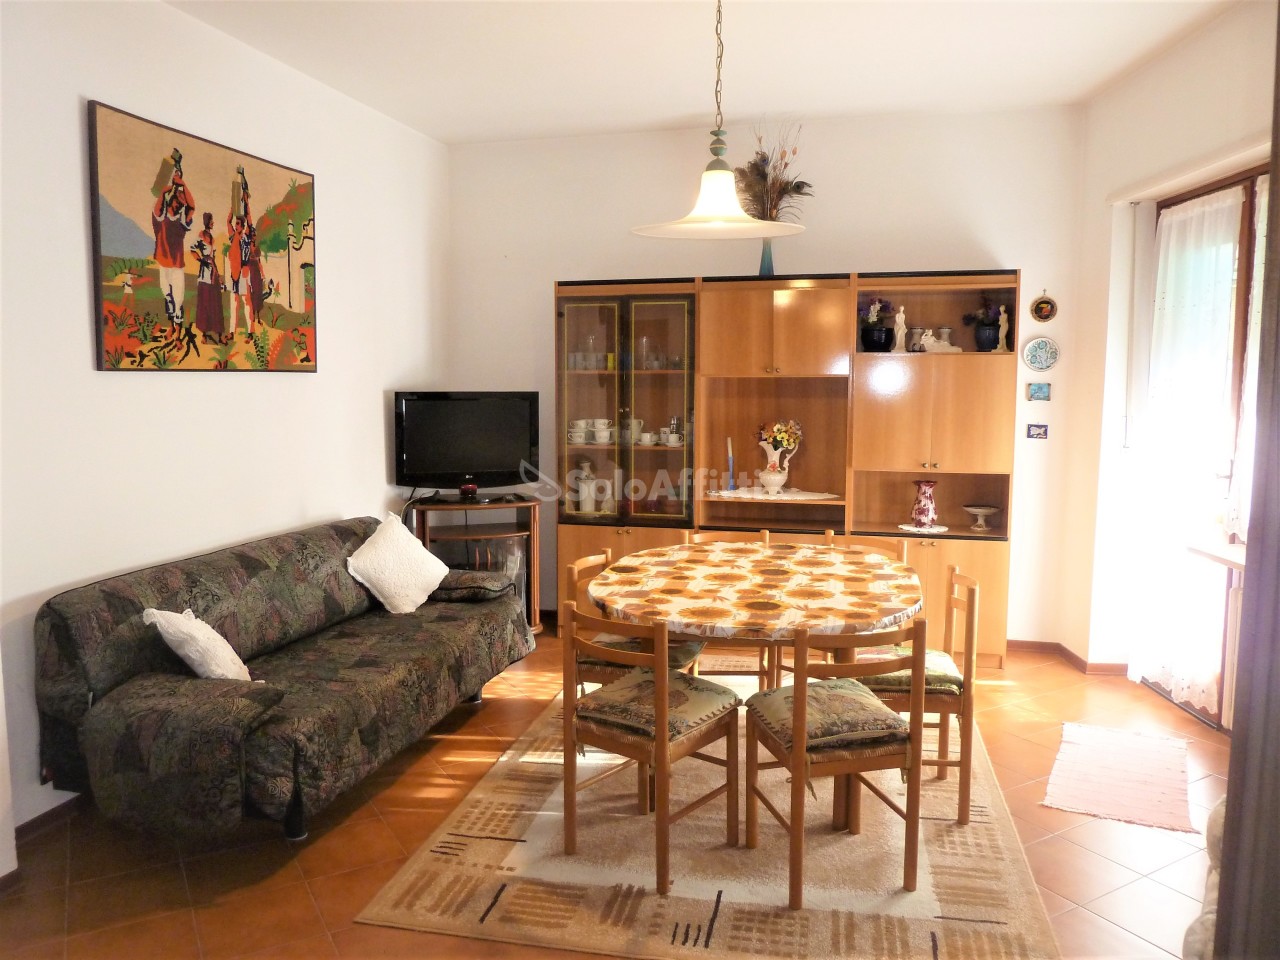 Appartamento in affitto a SanRemo, 6 locali, prezzo € 840 | PortaleAgenzieImmobiliari.it